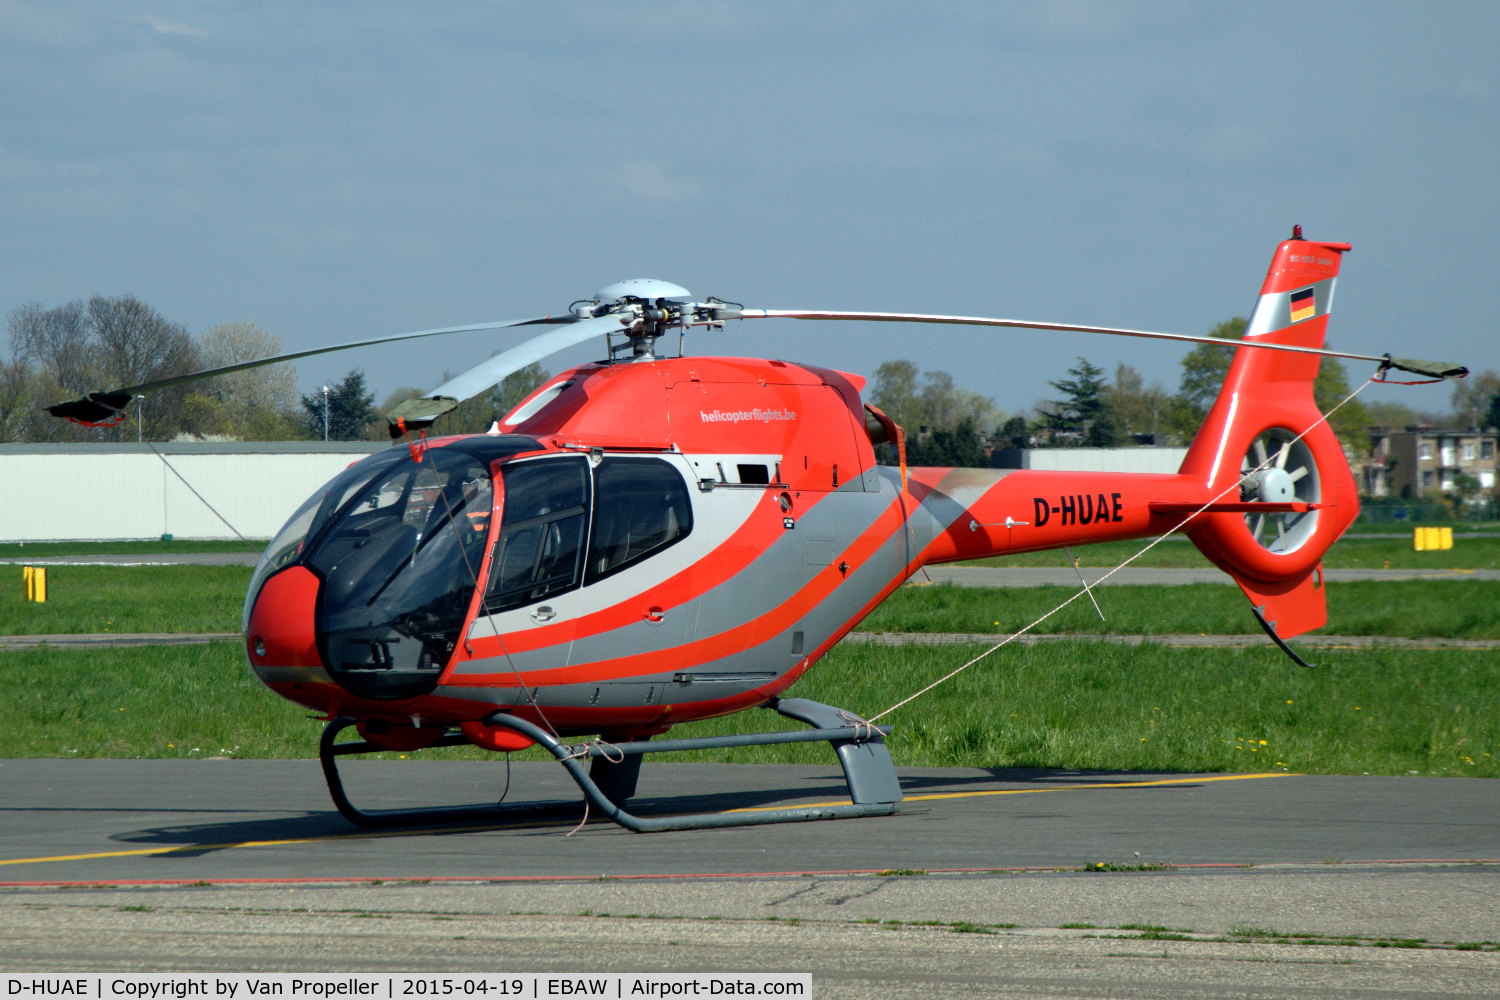 D-HUAE, 2000 Eurocopter EC-120B Colibri C/N 1144, Eurocopter EC-120B helicopter parked at Antwerpen Deurne airport, Belgium